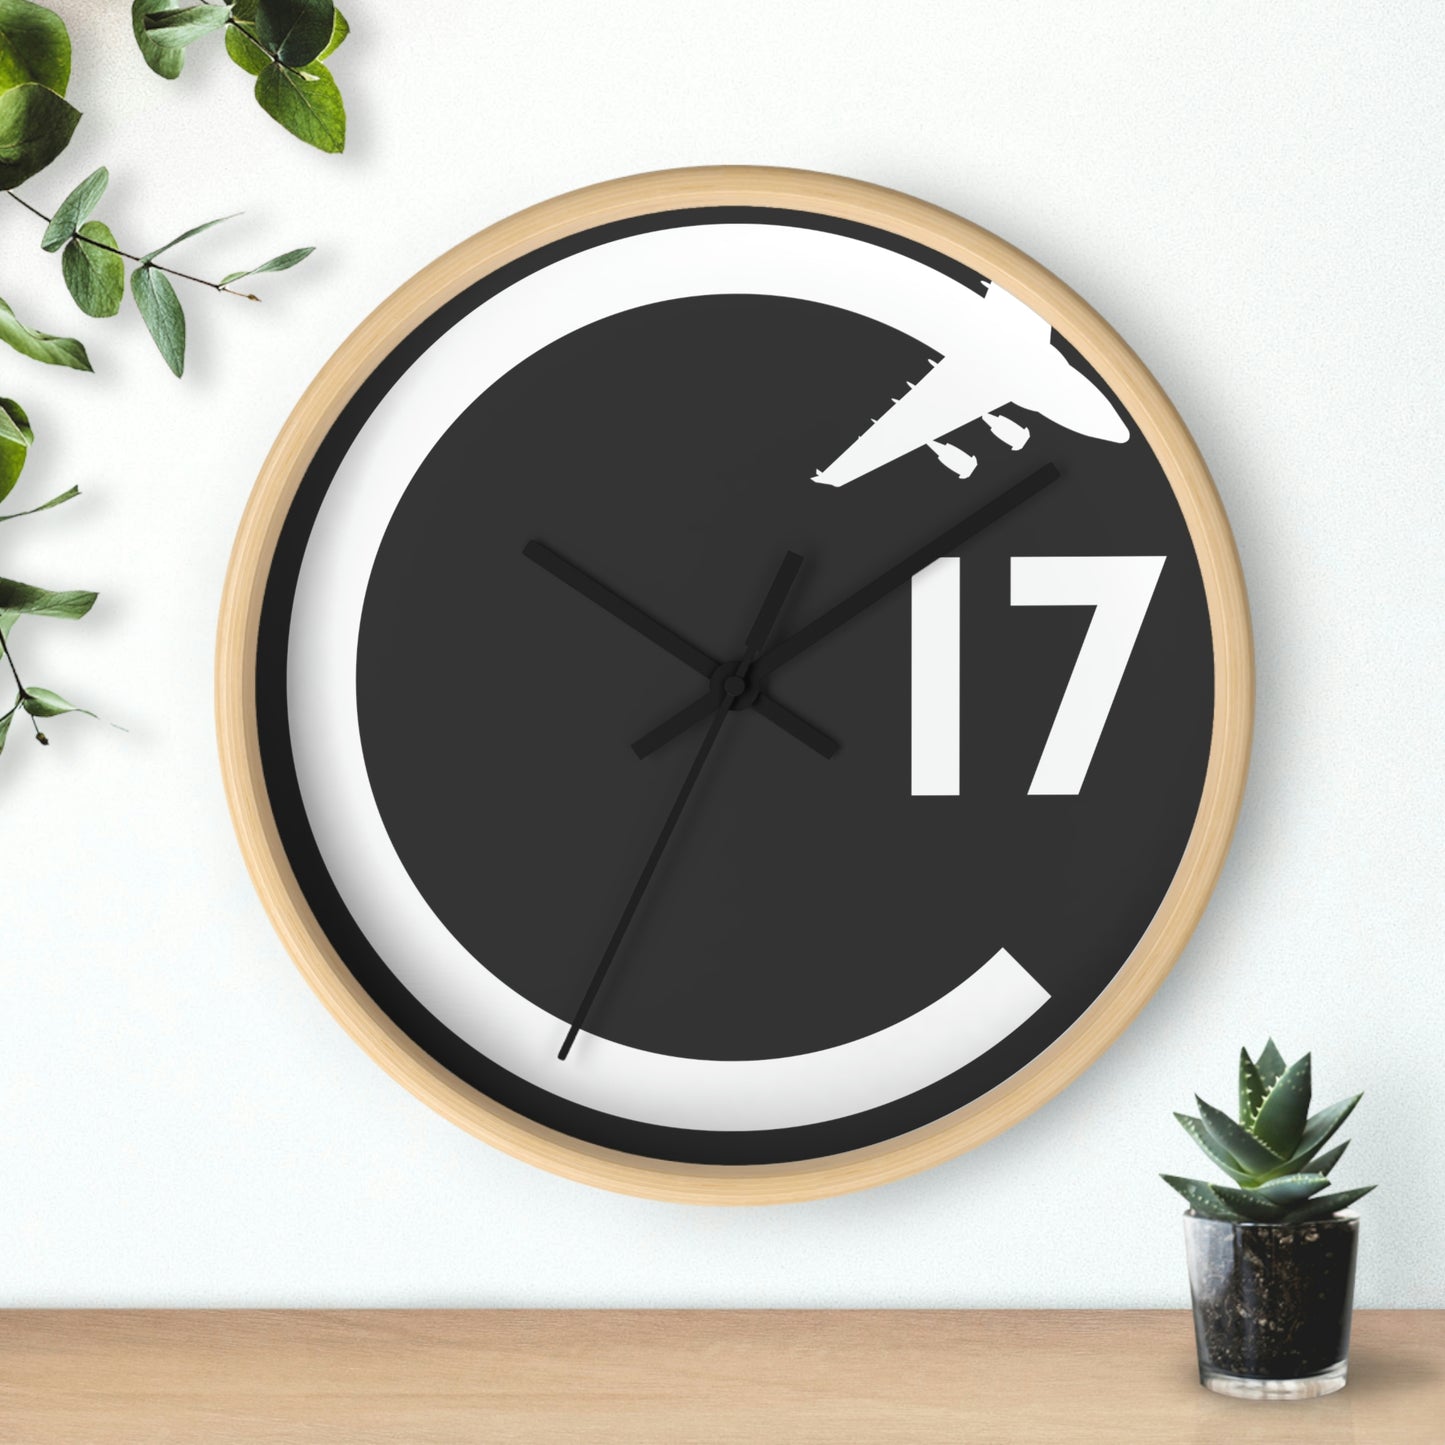 C17 Wall Clock